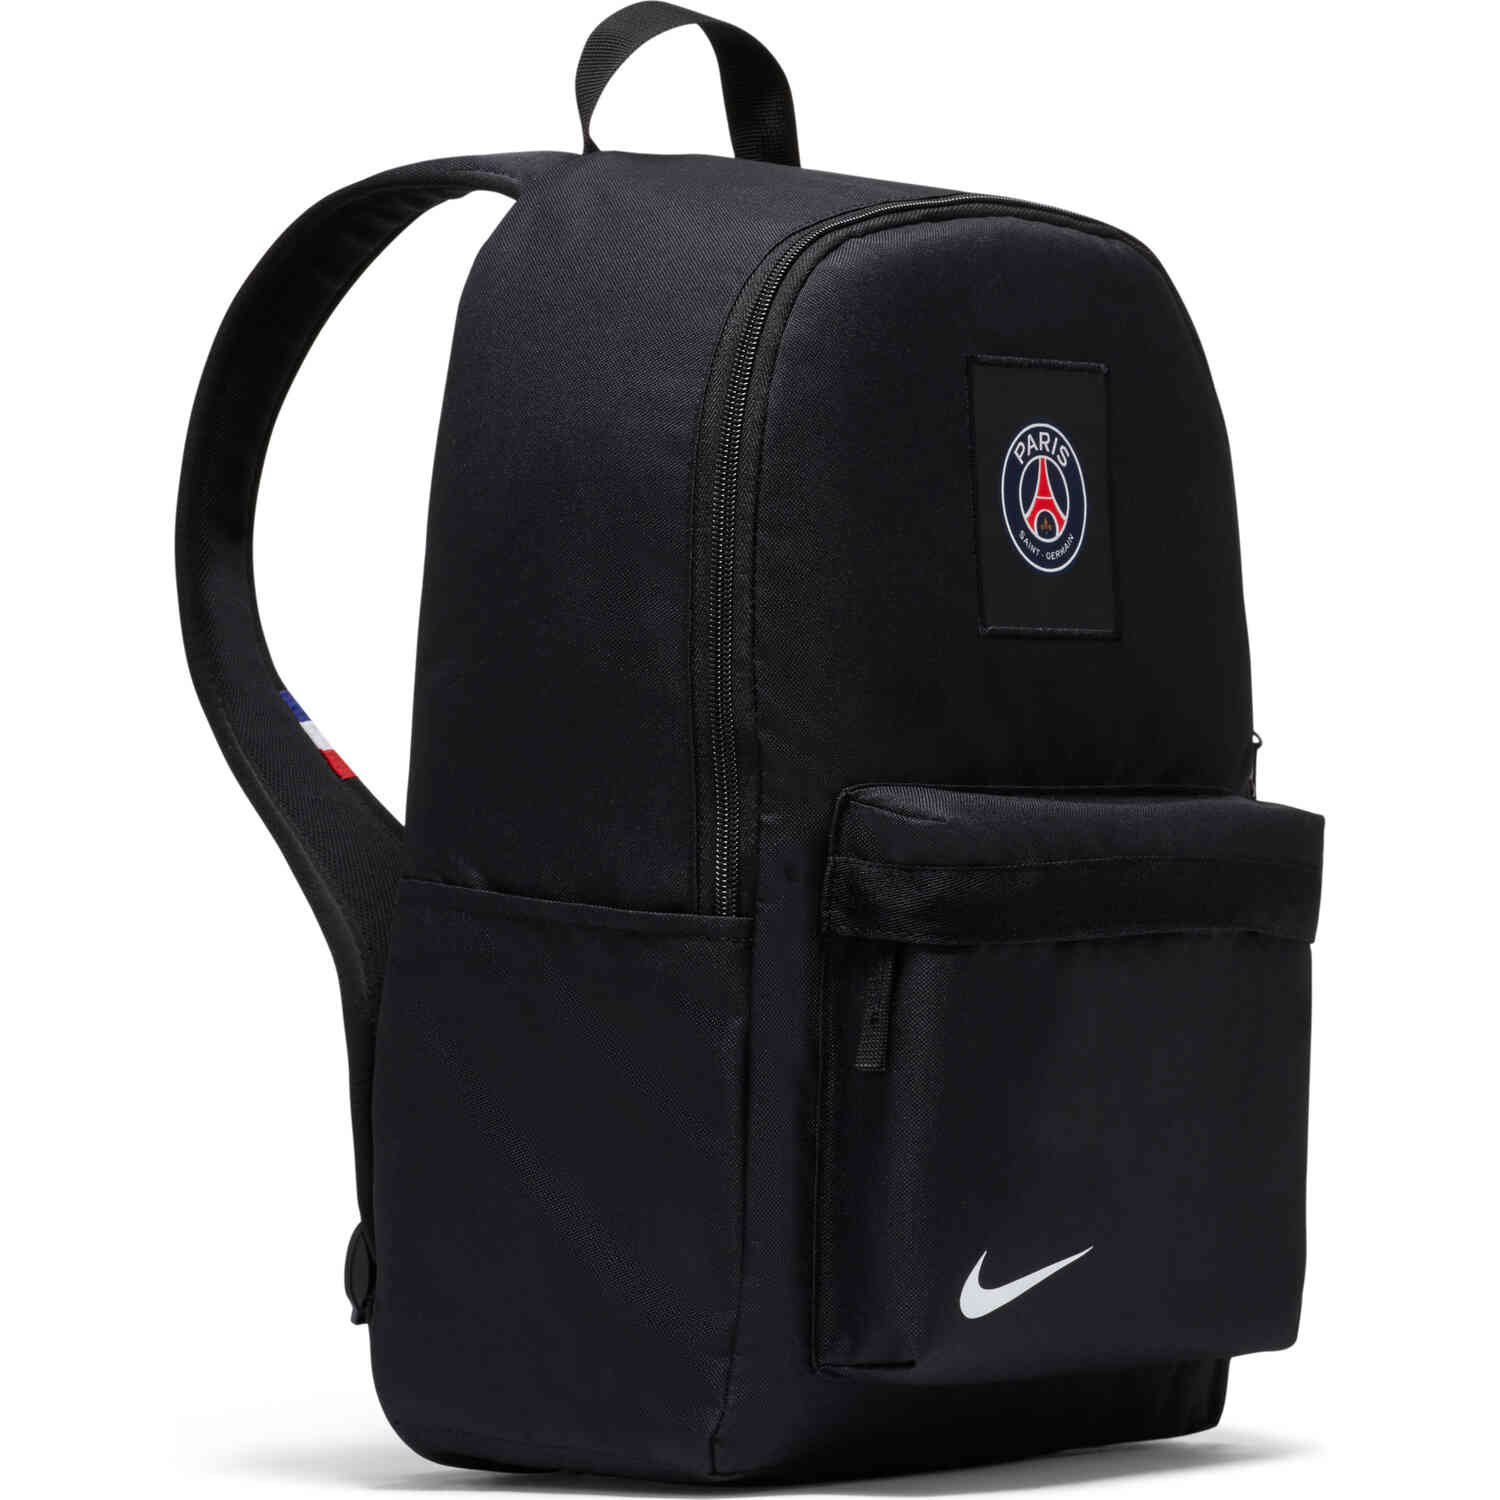 Nike PSG Backpack - Black & White - SoccerPro